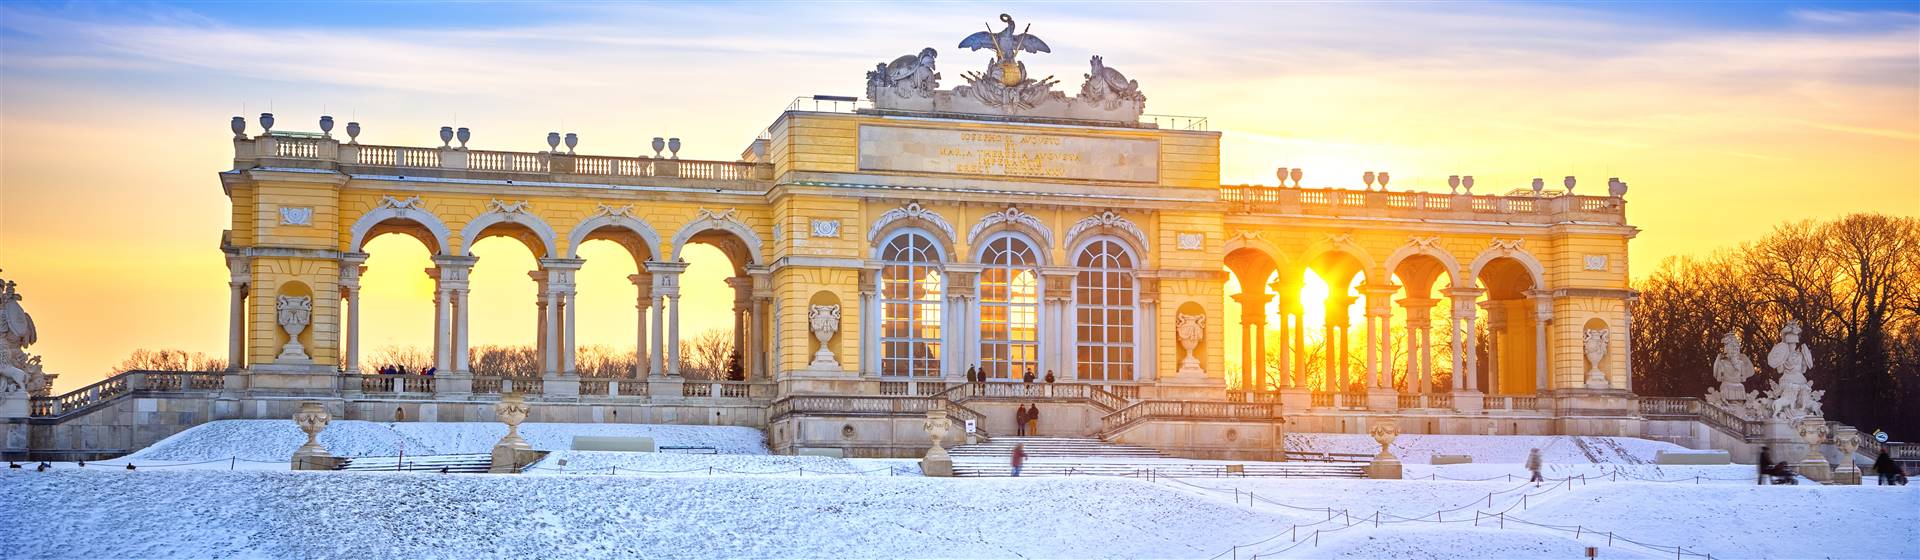 Christmas Winter Wonderland in Vienna